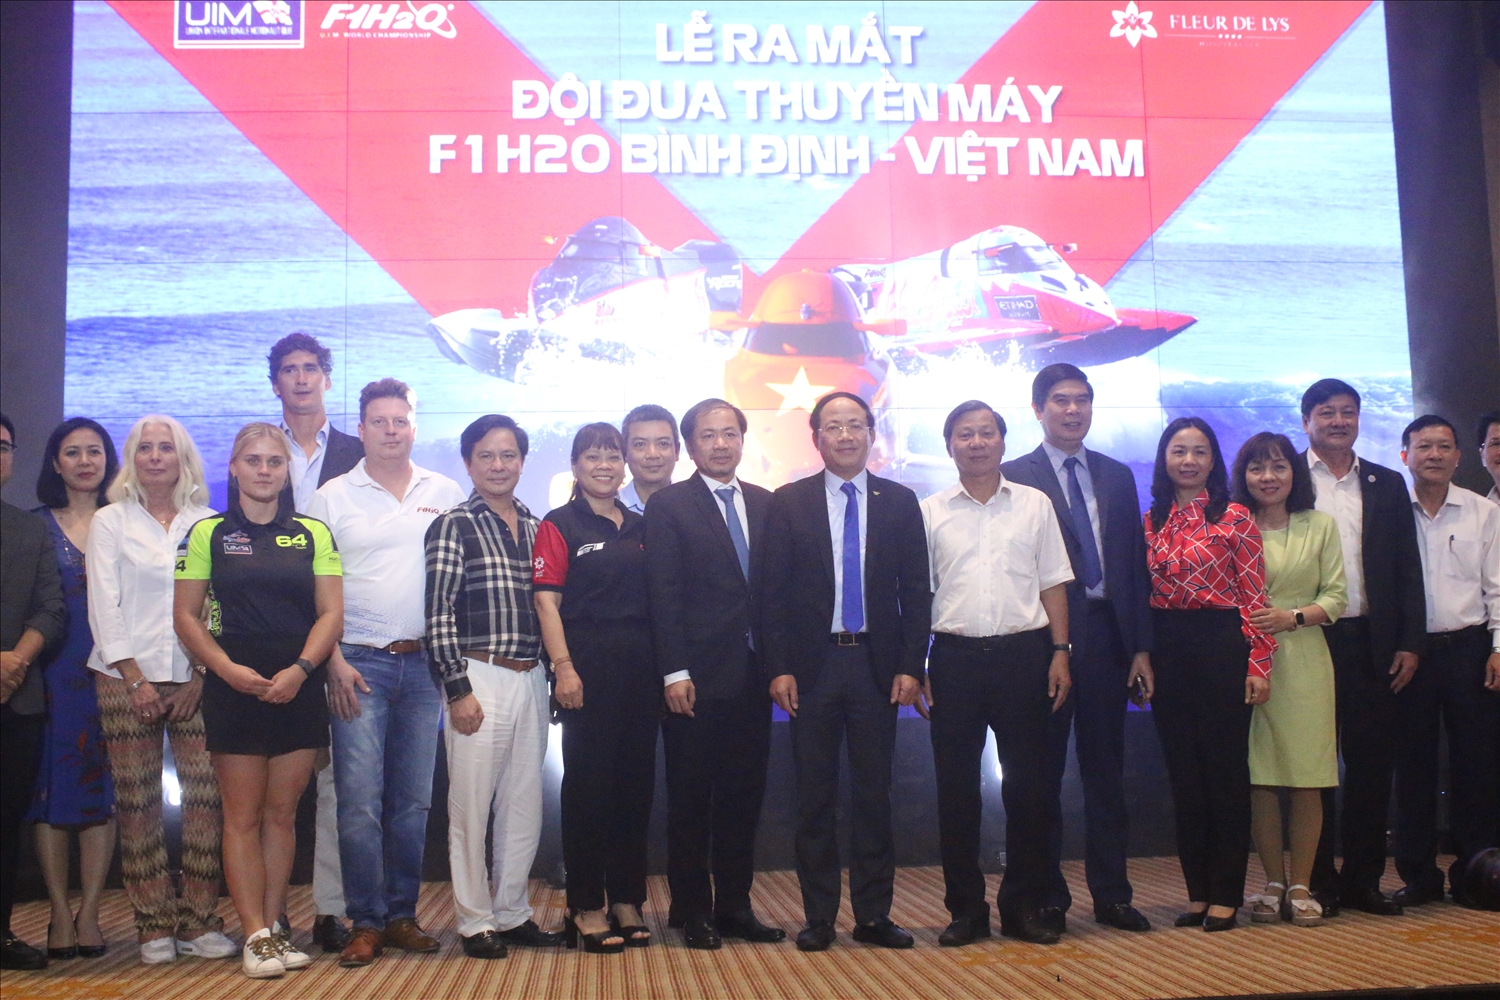 Lễ ra mắt Đội đua thuyền máy F1H20 Việt Nam – Bình Định